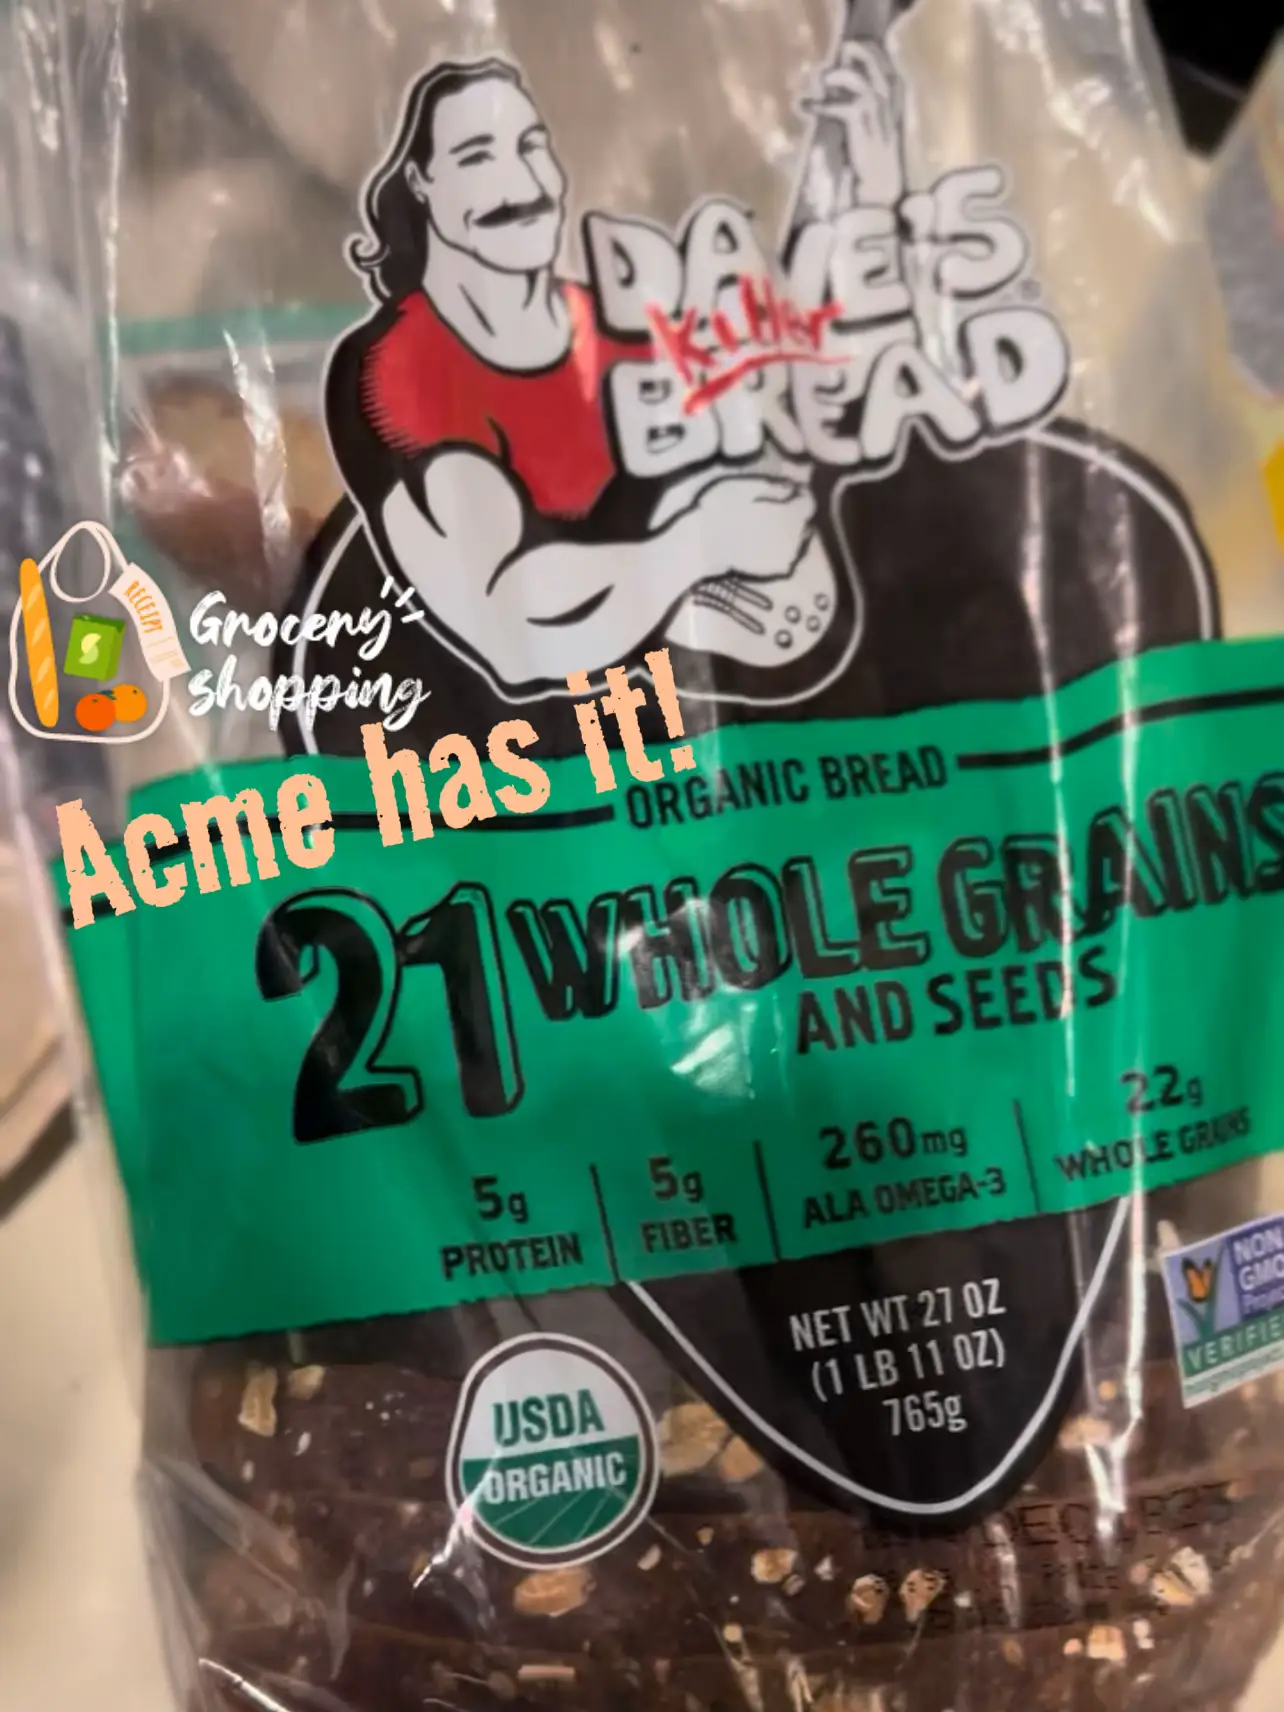 Acme Smoked Salmon Candy, 3 oz - Kroger